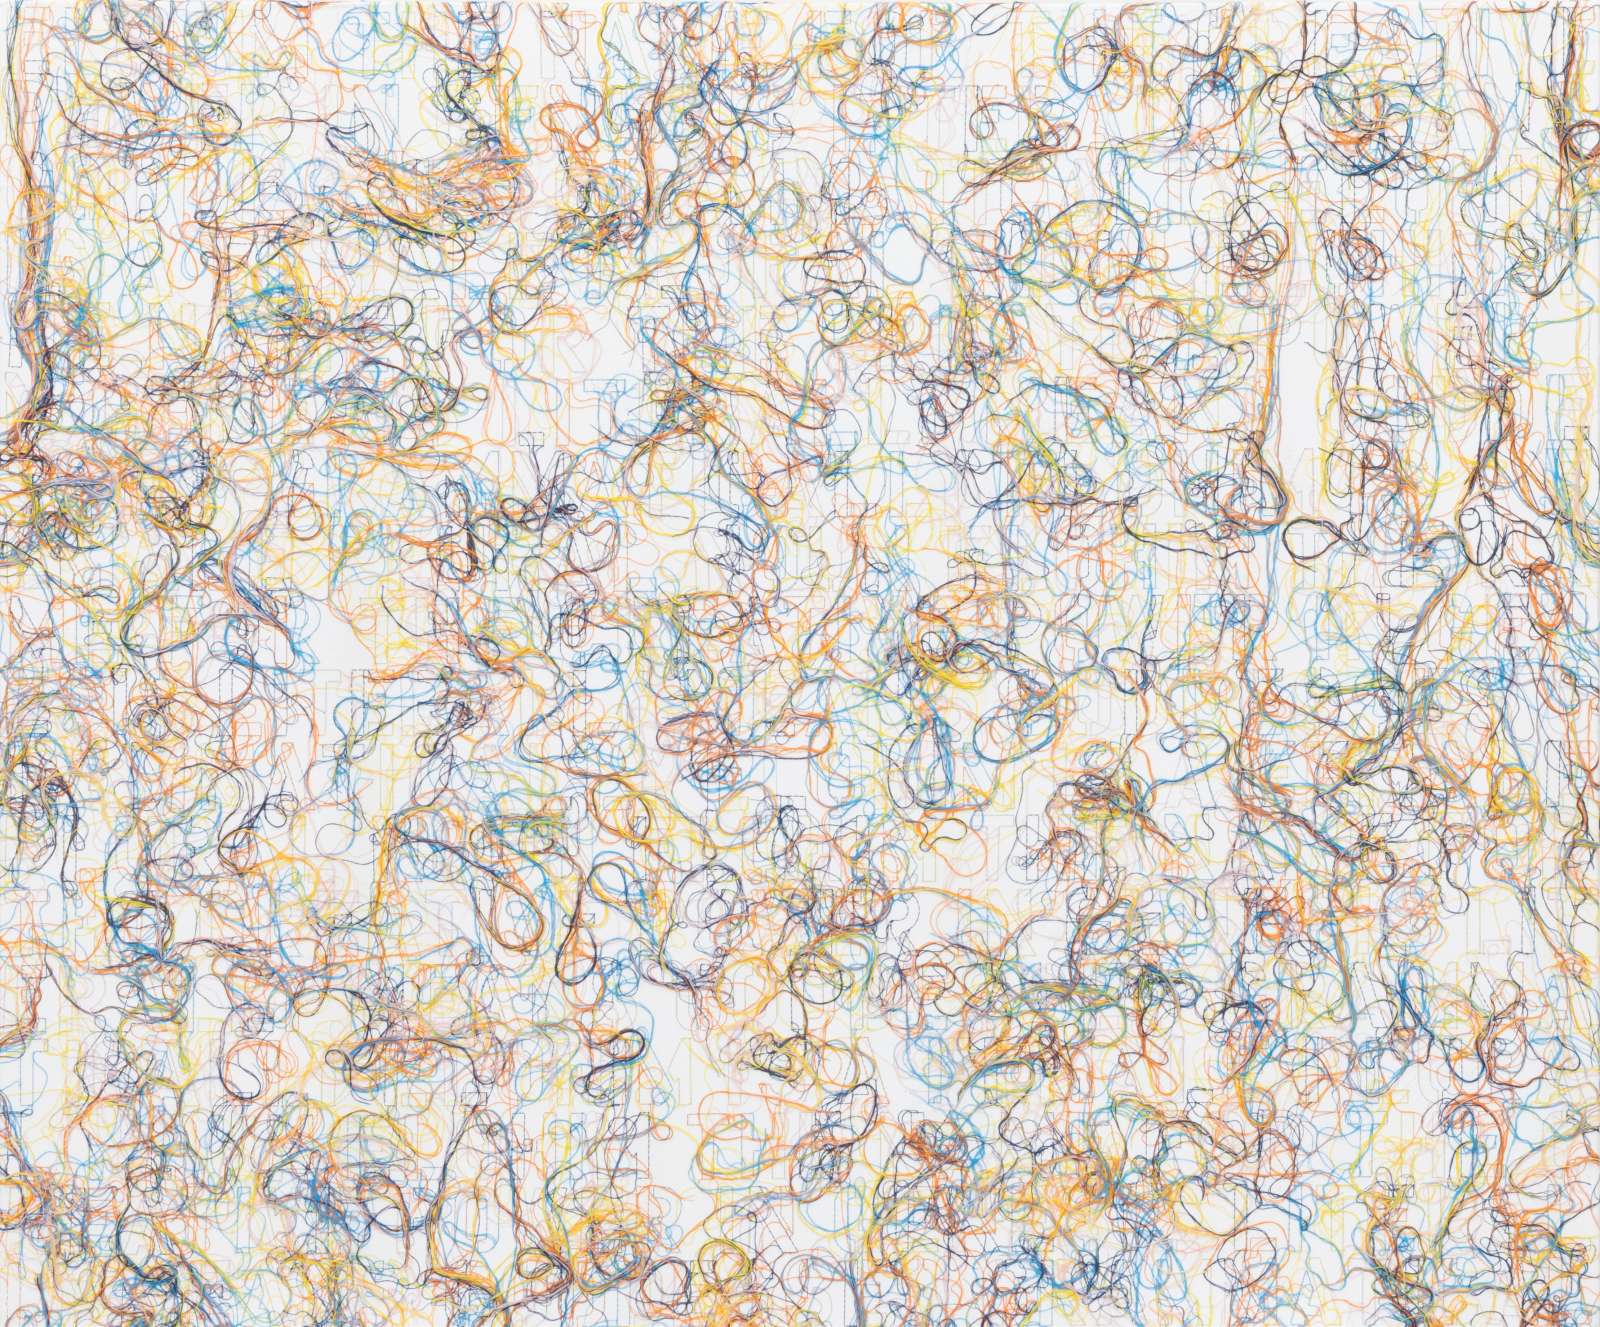 Ghada Amer, Elohim, 2022, Acrylic, embroidery and gel medium on canvas, 101.6 x 121.9 cm